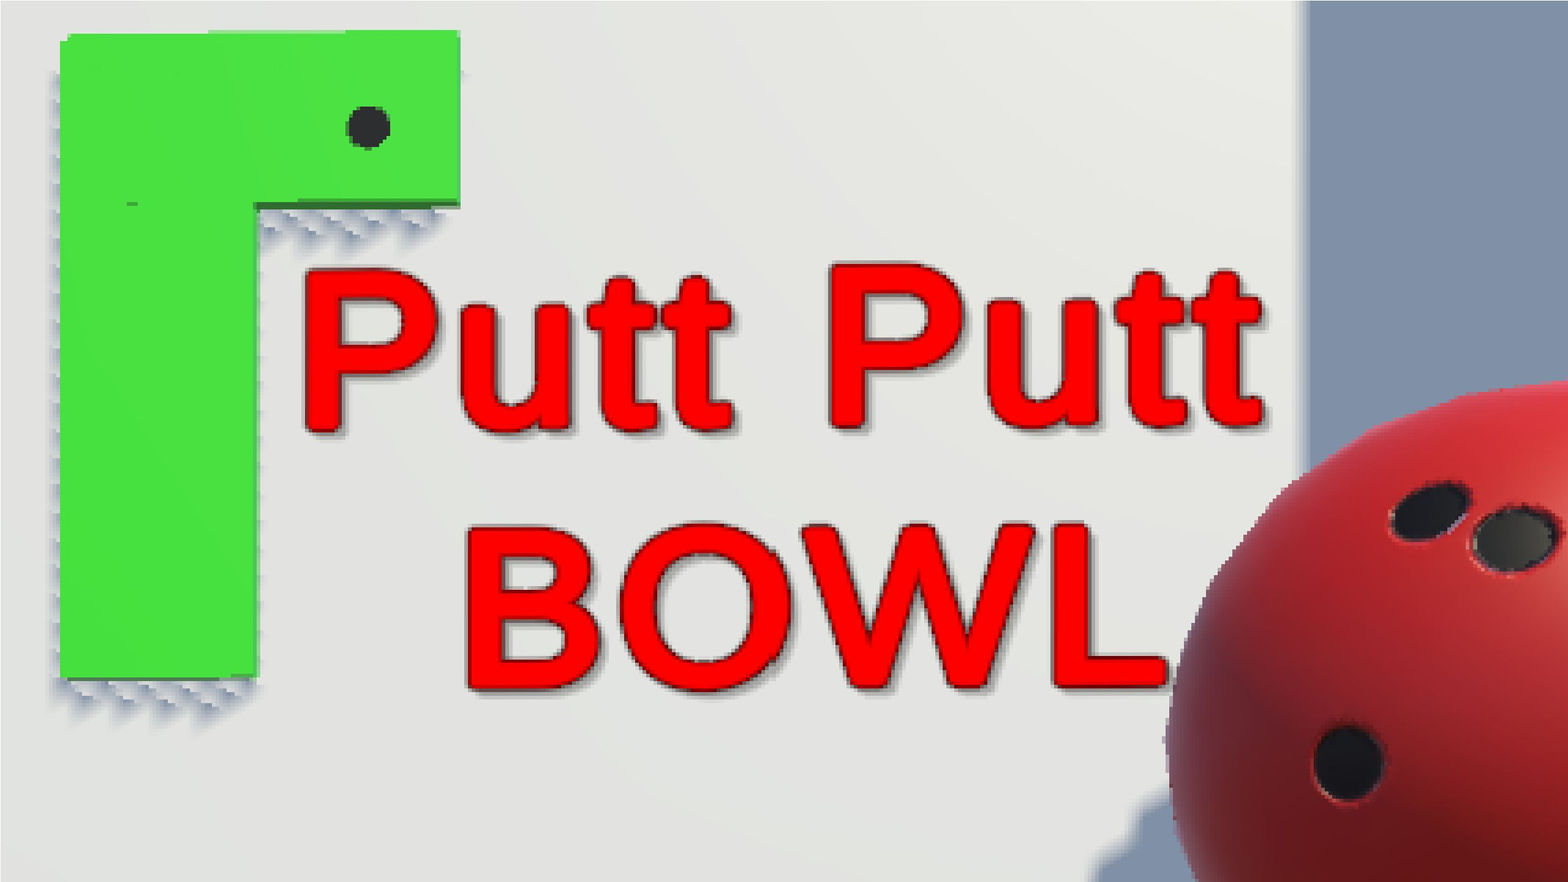 Putt Putt Bowl